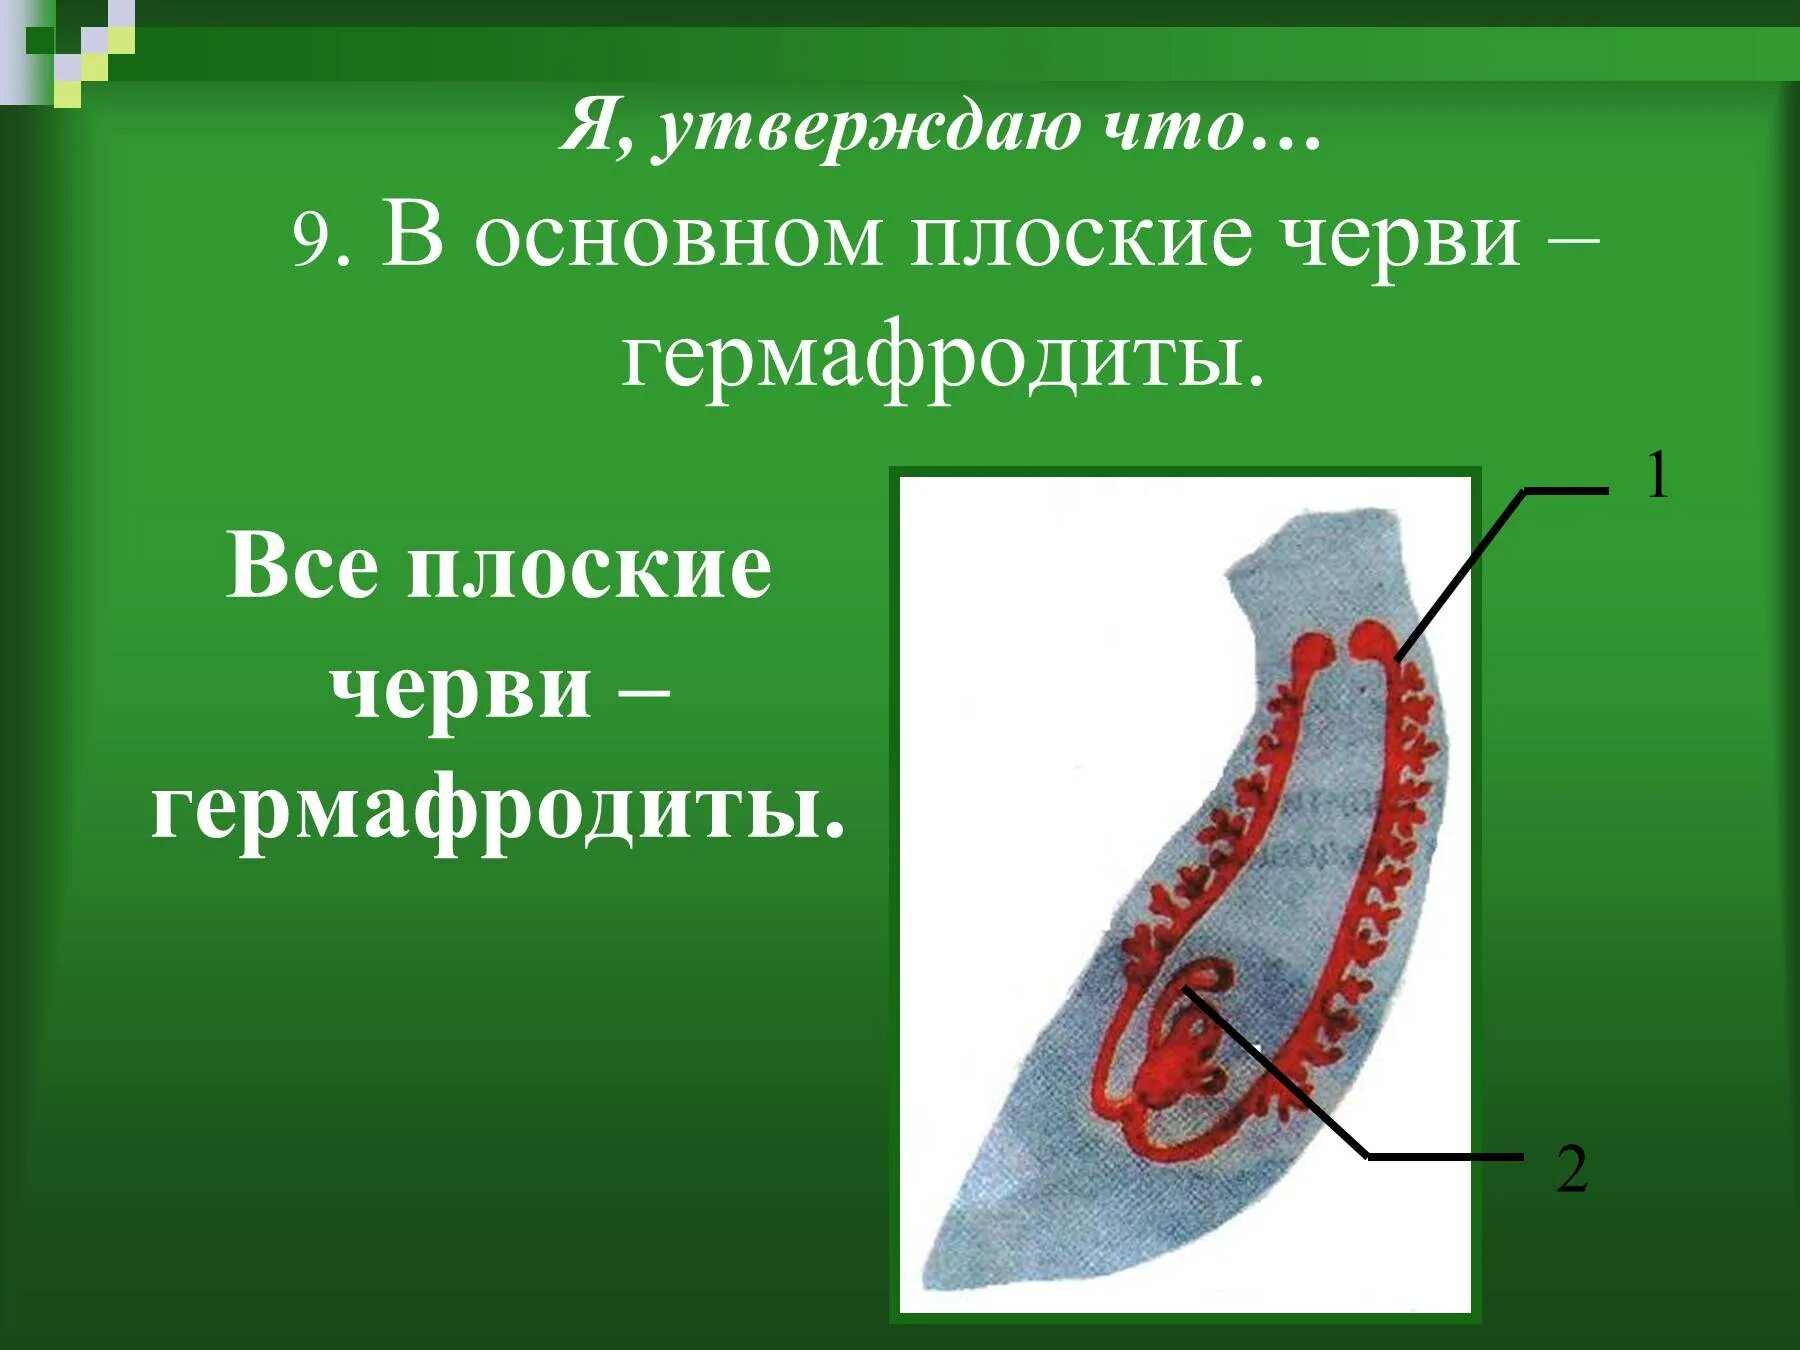 Гермафродитами являются черви. Плоские черви. Плоские черви гермафродиты. Гермафродитизм у плоских червей. Выделительная система плоских червей гермафродиты.